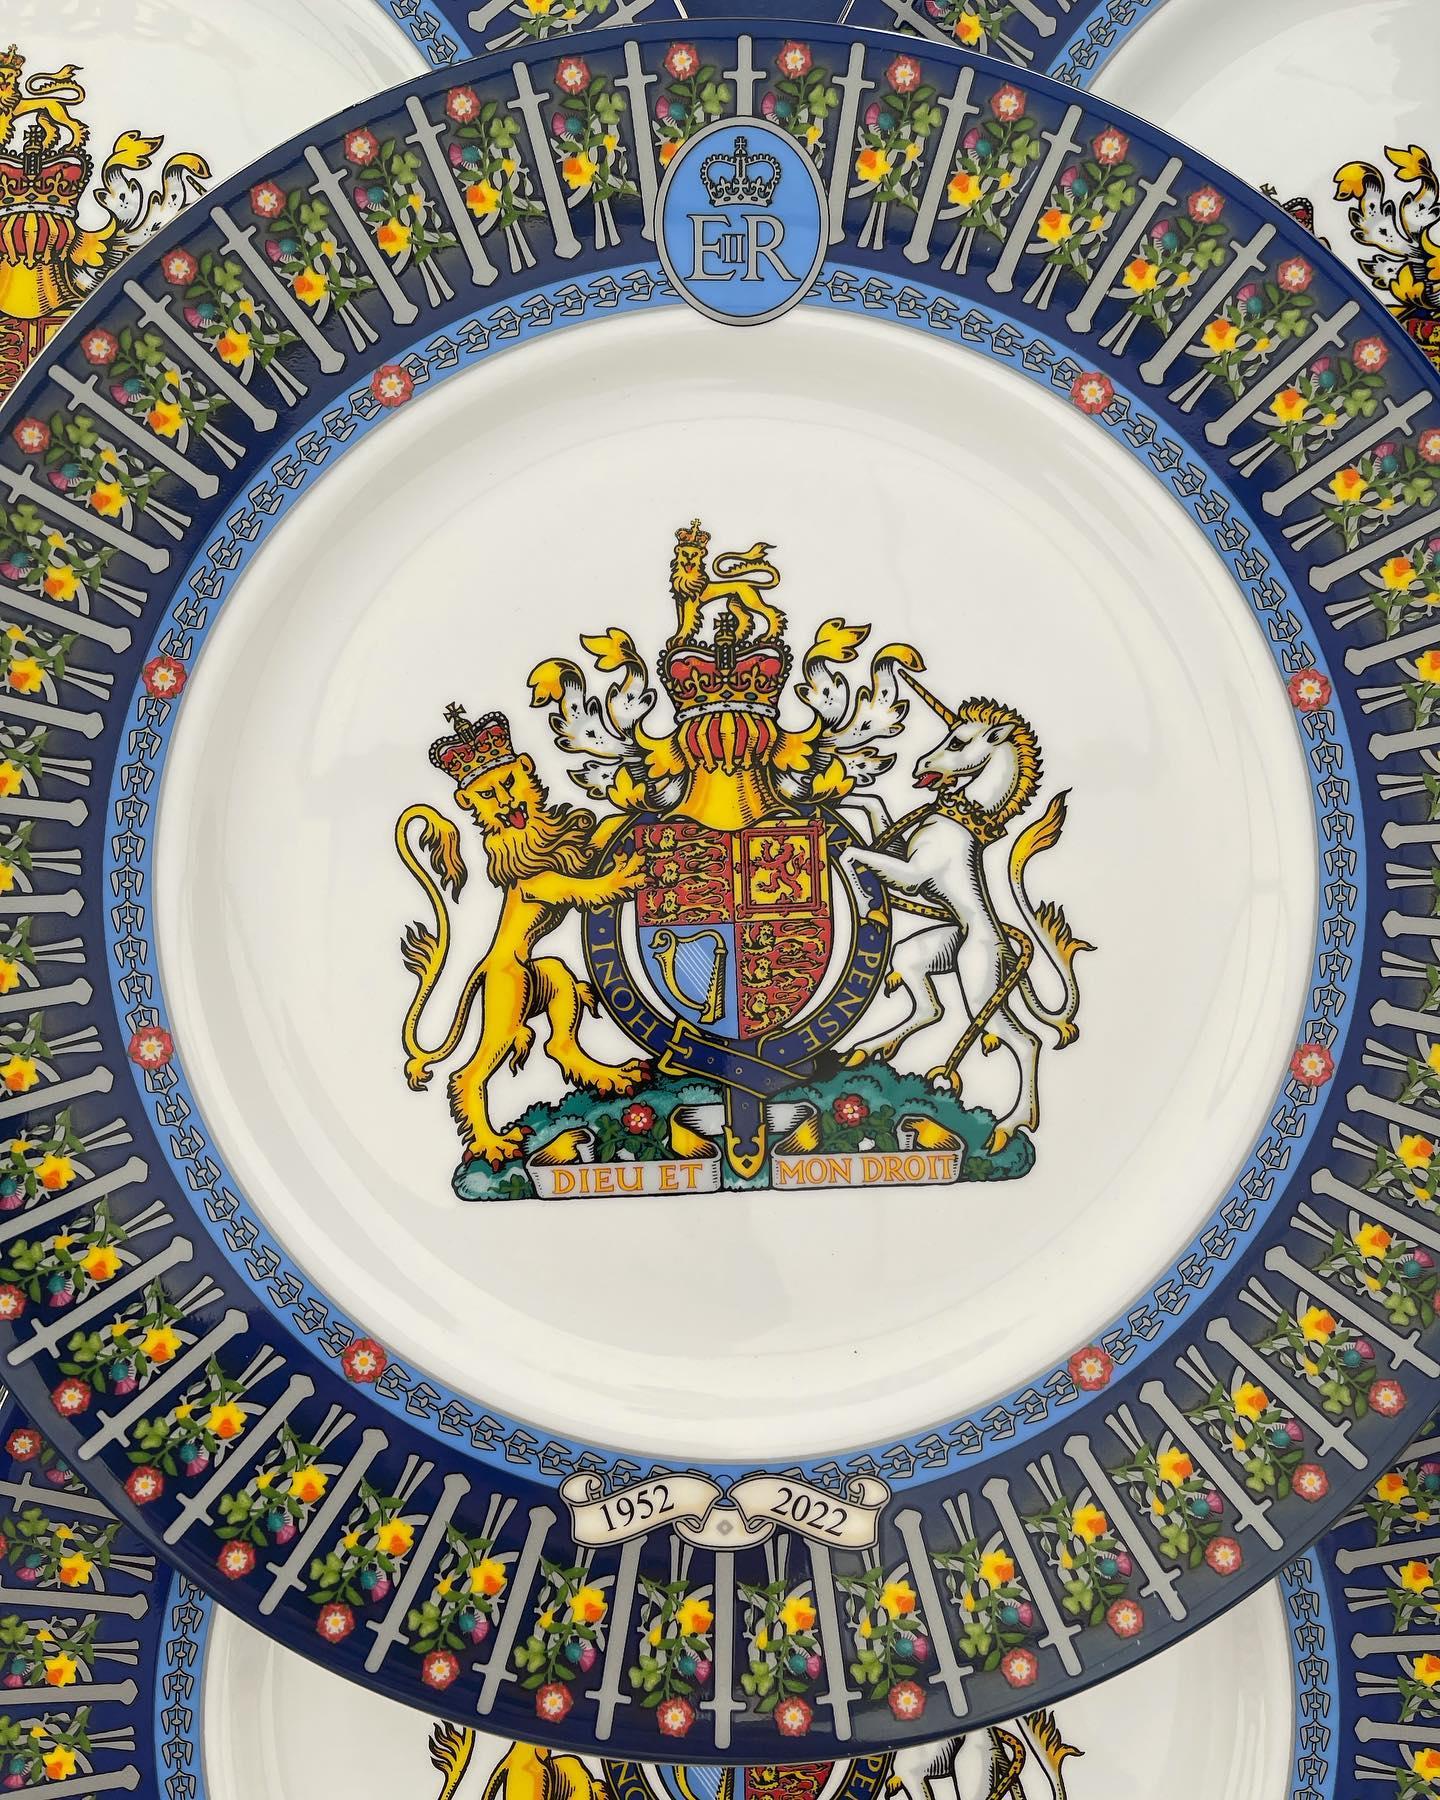 英国皇室御用品牌Halcyon Days最新骨瓷精品展現英女王風采